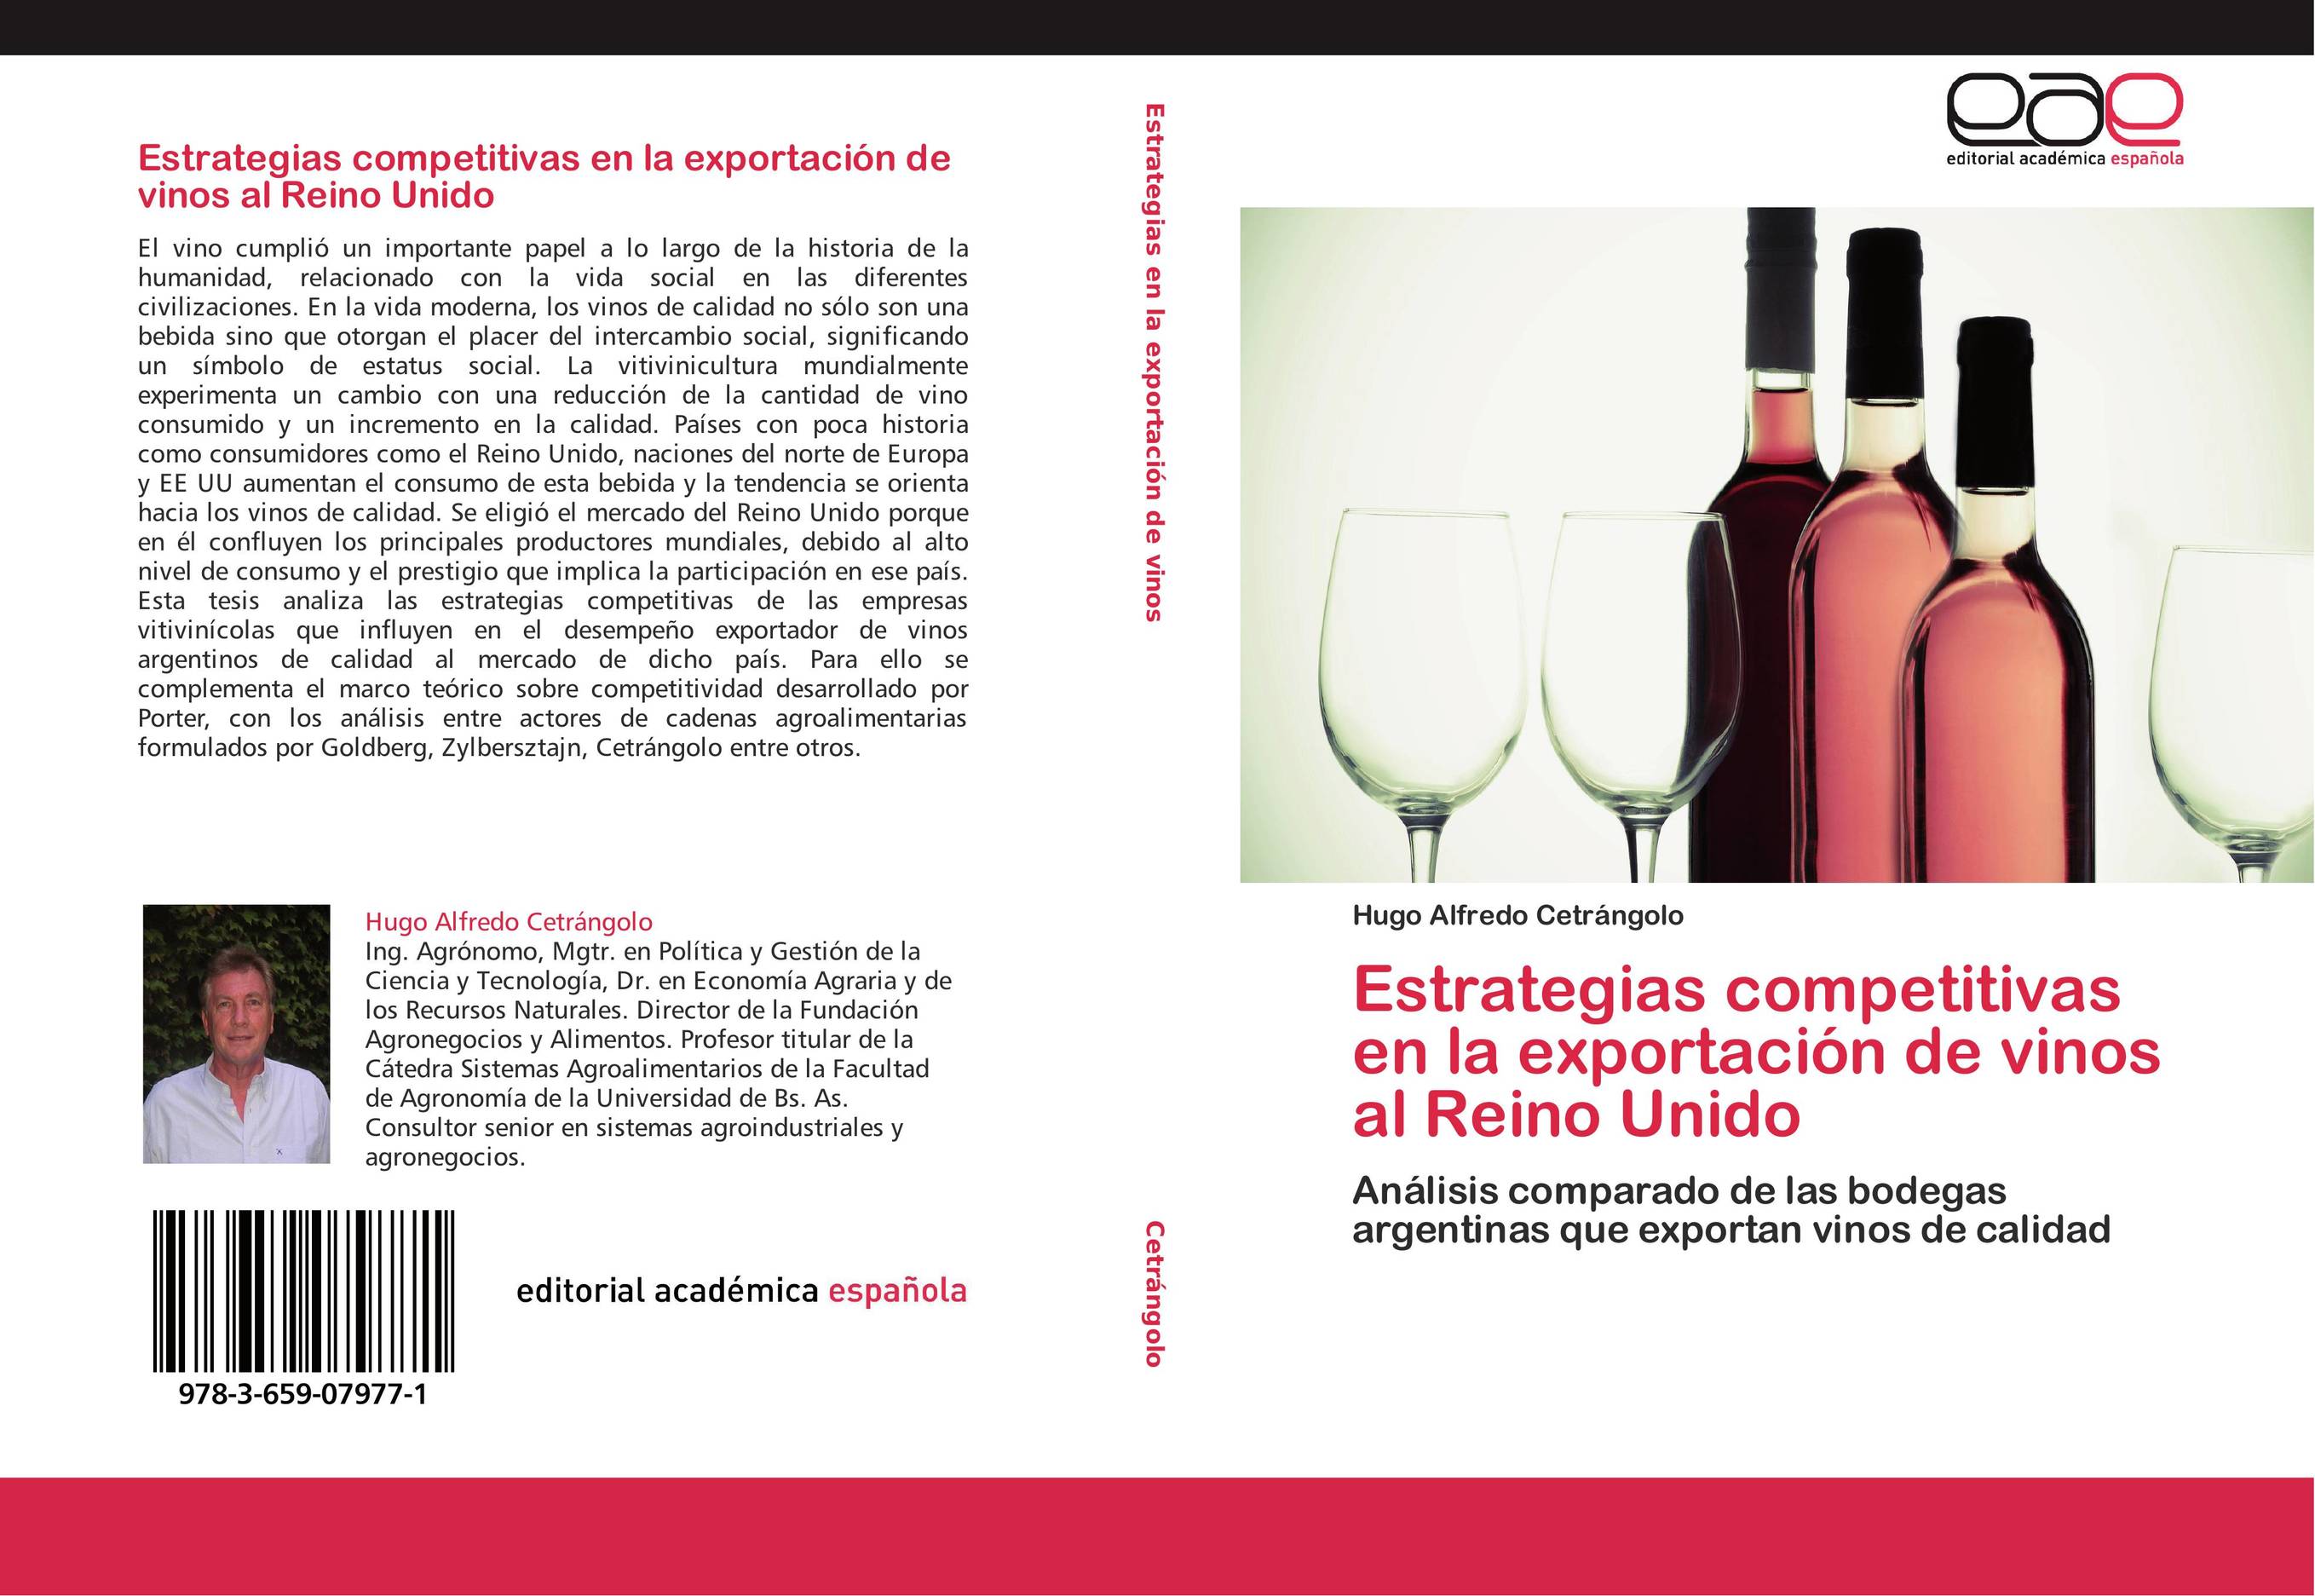 Estrategias competitivas en la exportación de vinos al Reino Unido